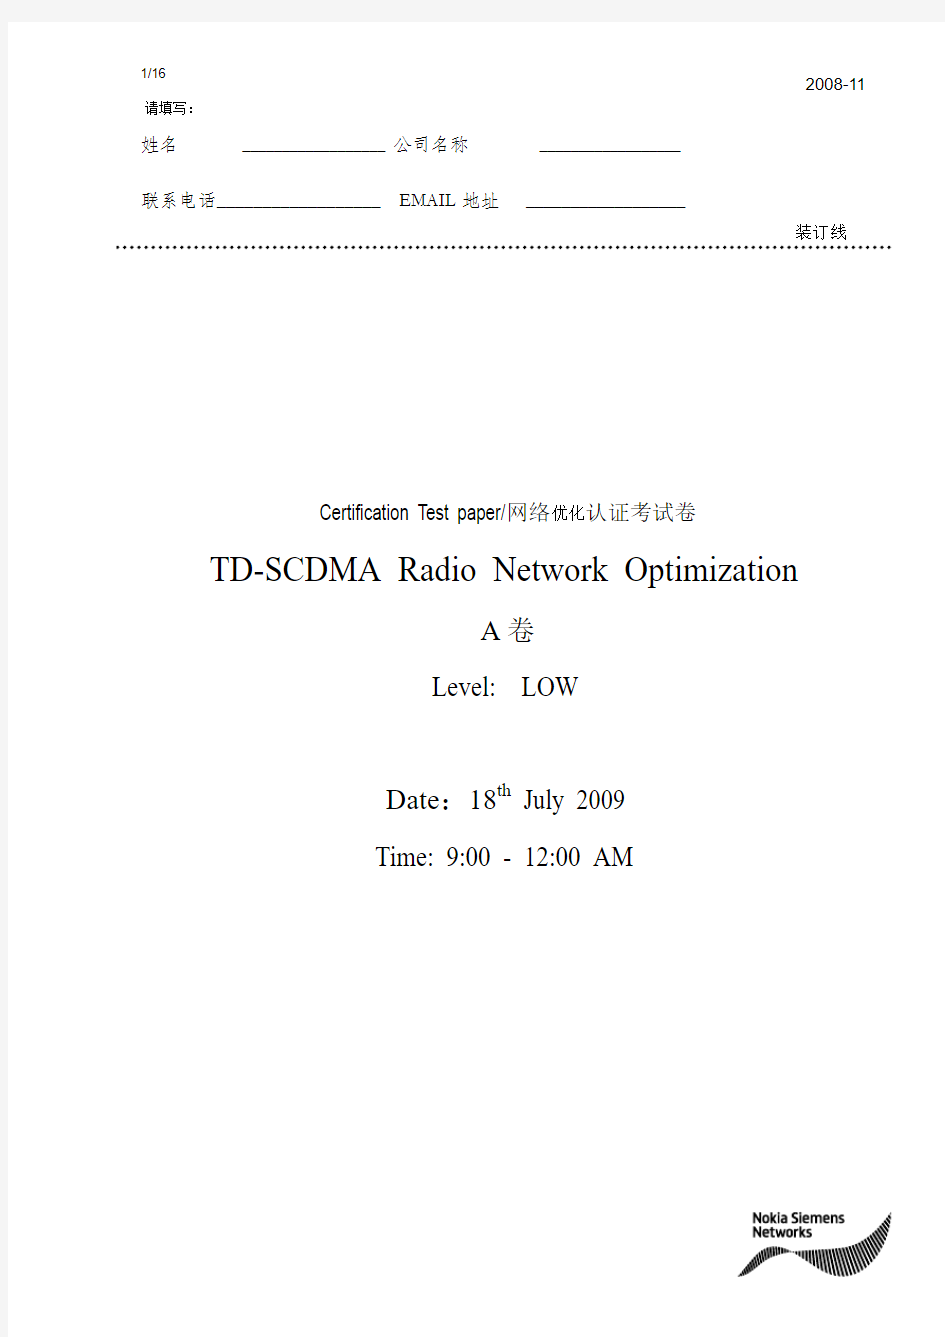 Test Paper TD-SCDMA Radio Network Optimization low-A(含答案)